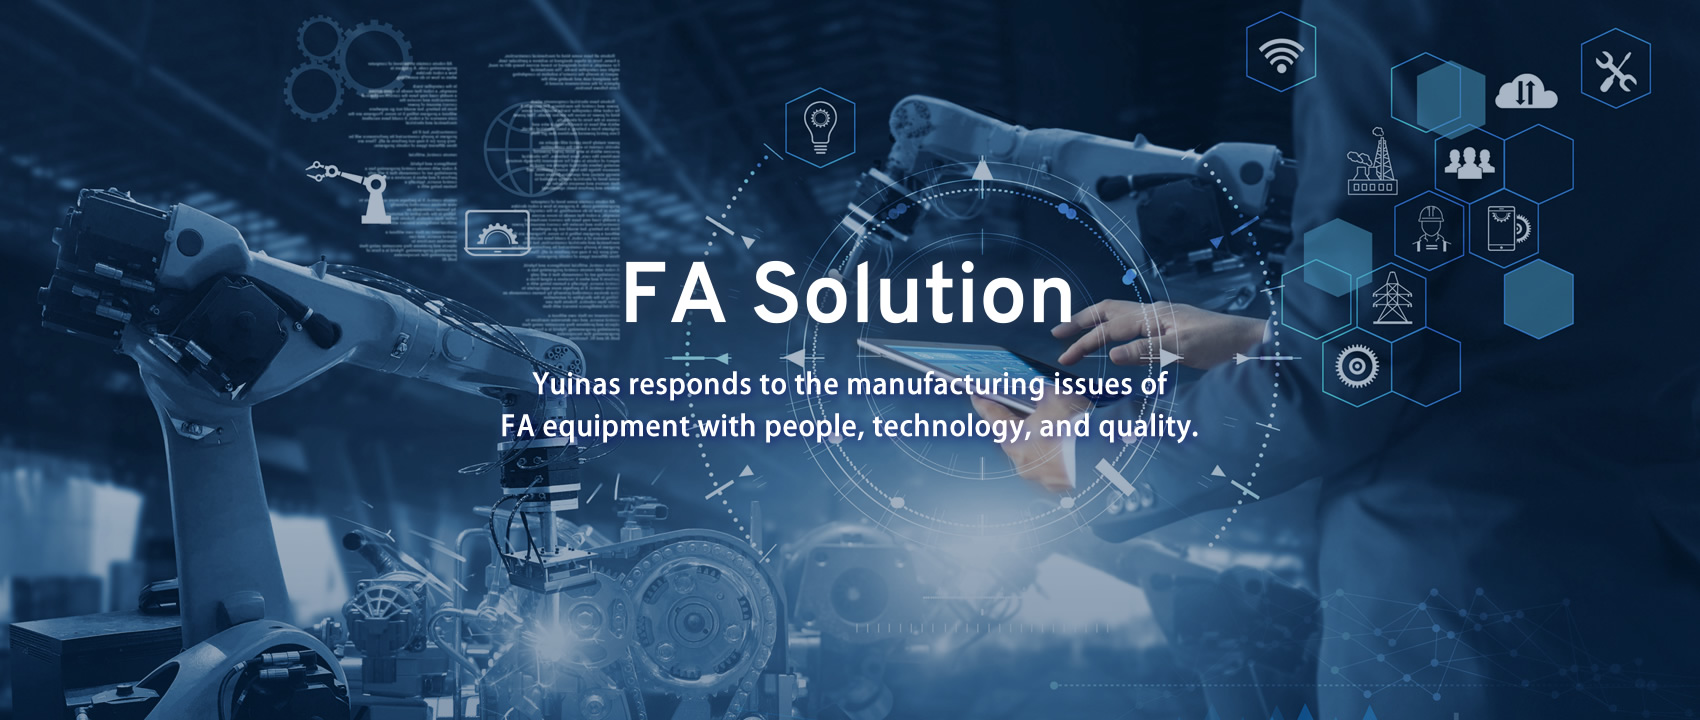 FA Solution ユイナスは、FA装置のものづくりの課題に人・技術・品質でお応えします